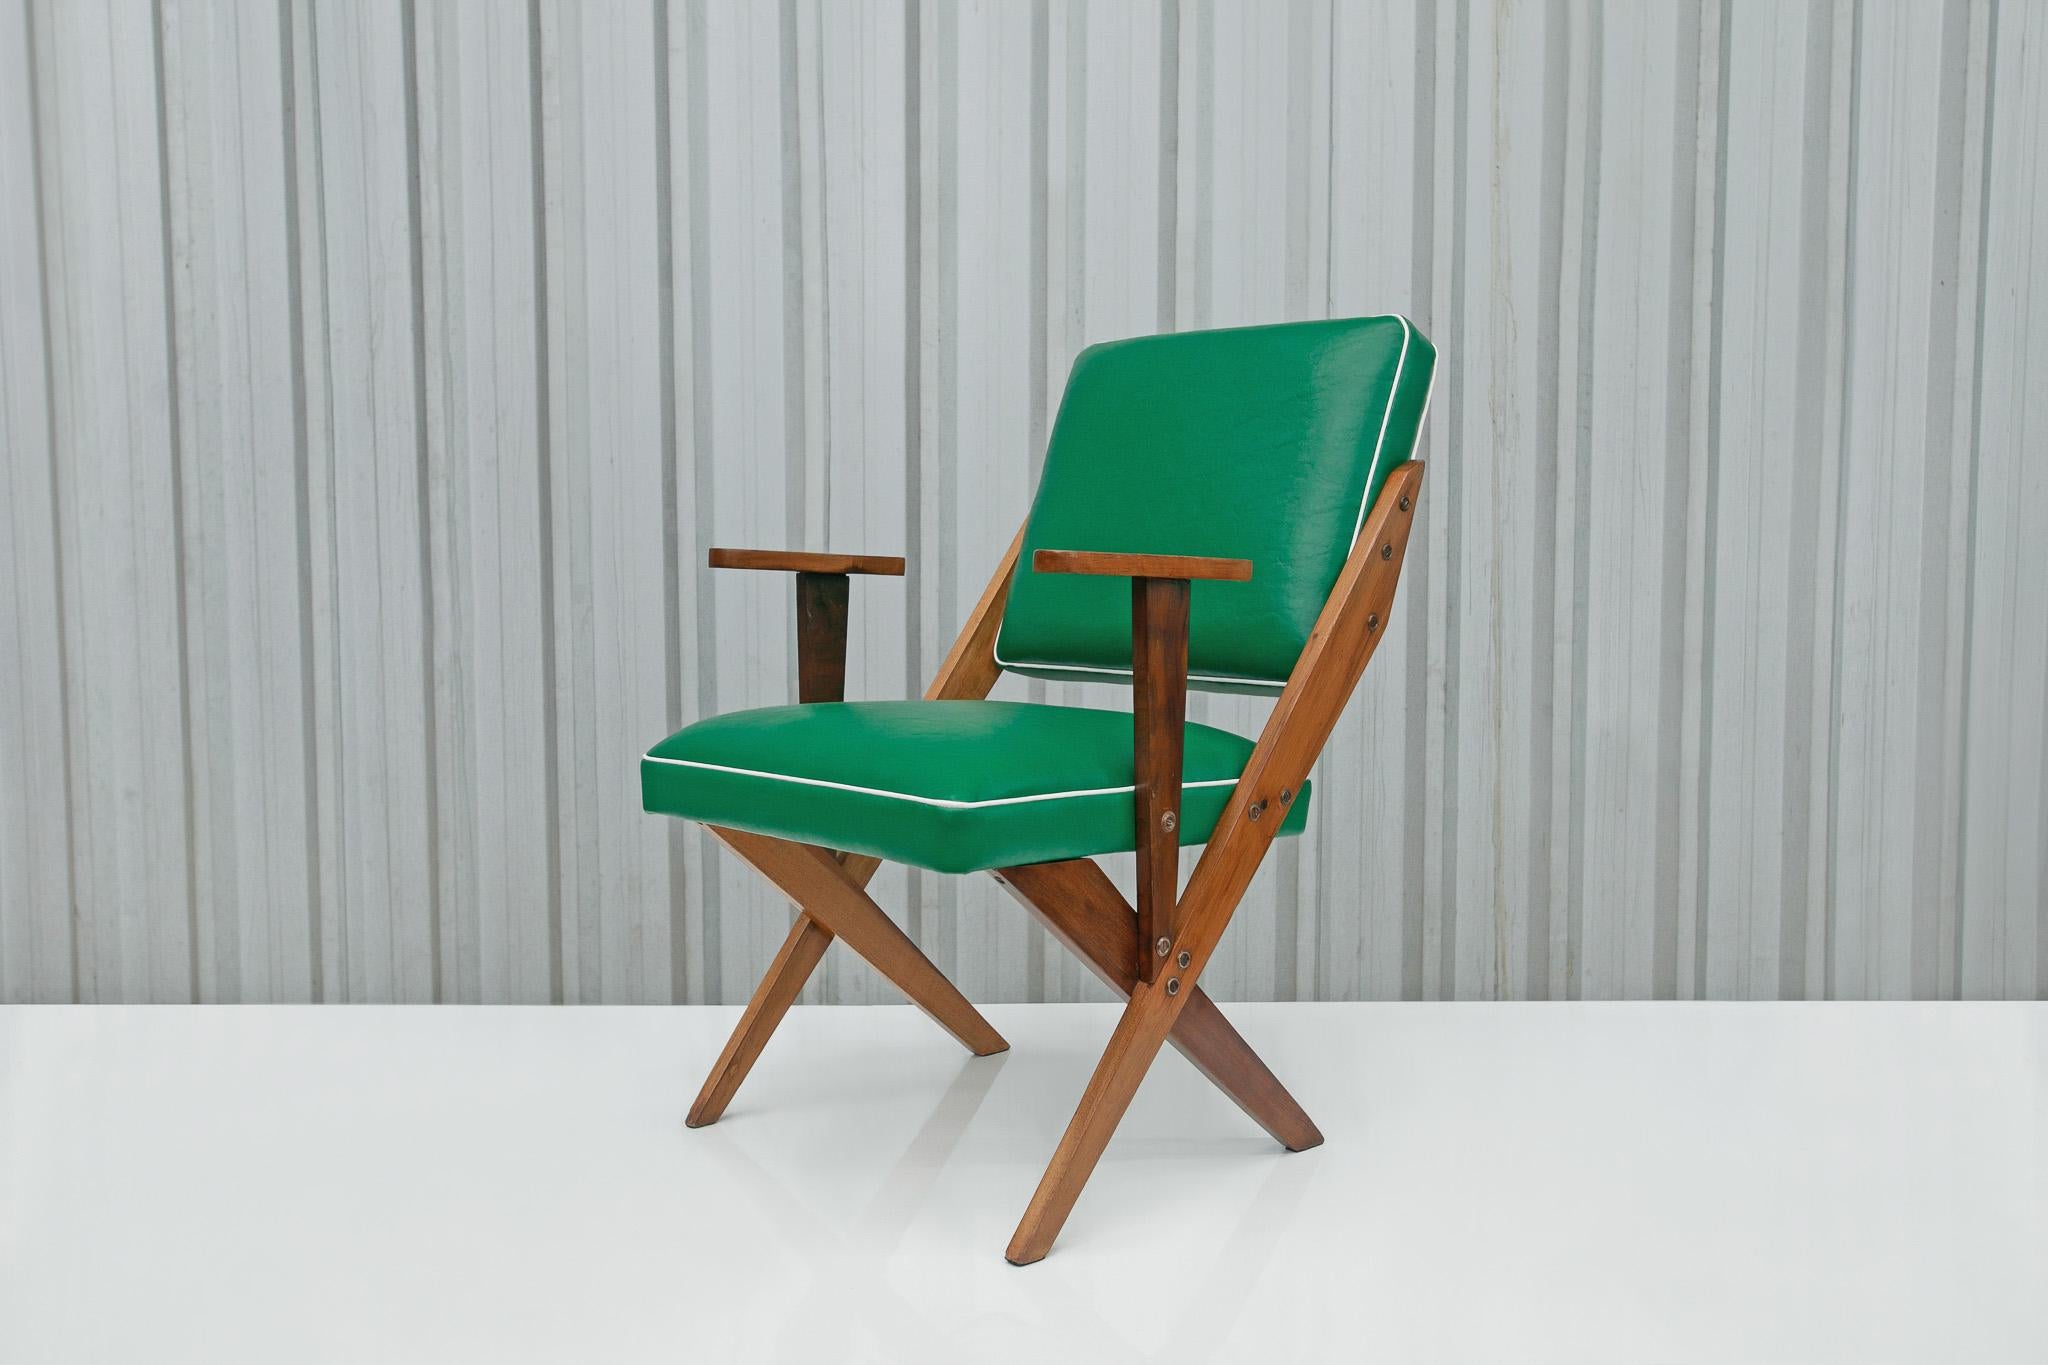 Disponible aujourd'hui, ce magnifique et super confortable fauteuil Mid-century en bois et faux cuir vert conçu par Jose Zanine Caldas dans les années 50 est splendide !

Ce fauteuil unique en son genre se compose d'une structure en bois dur et d'un